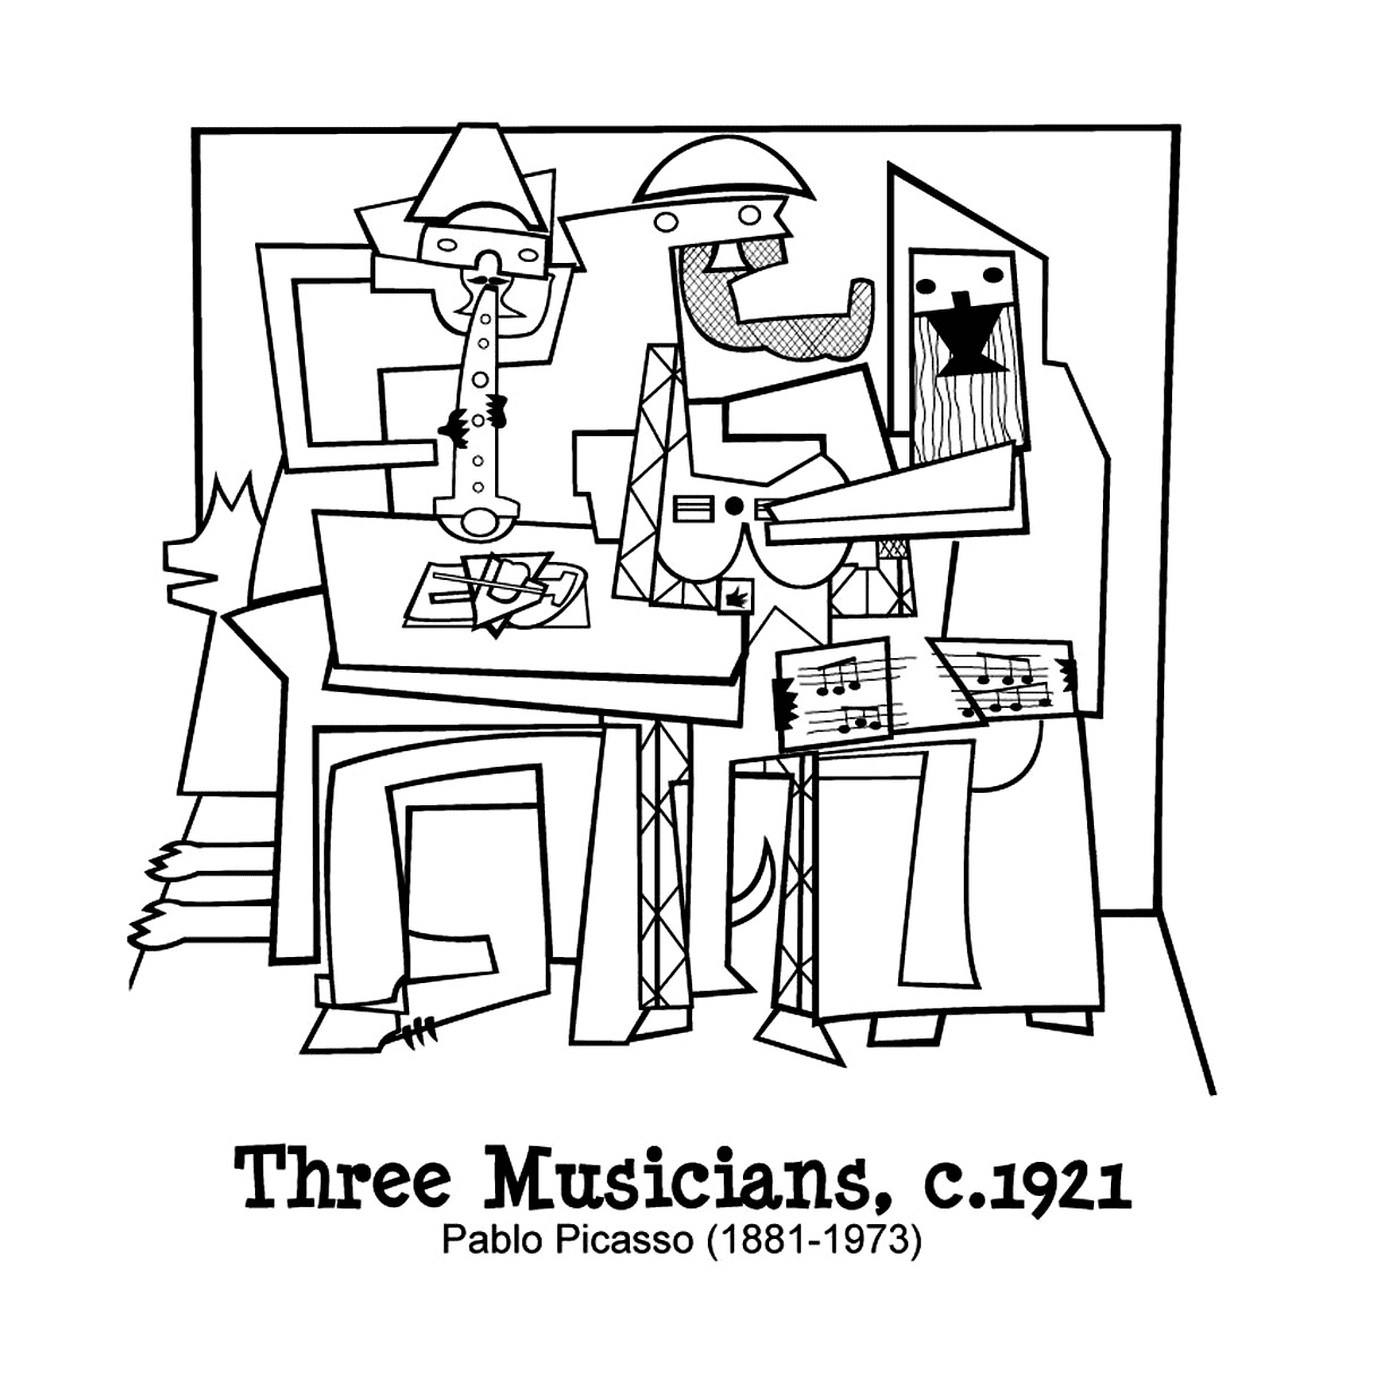  tres músicos como Picasso 